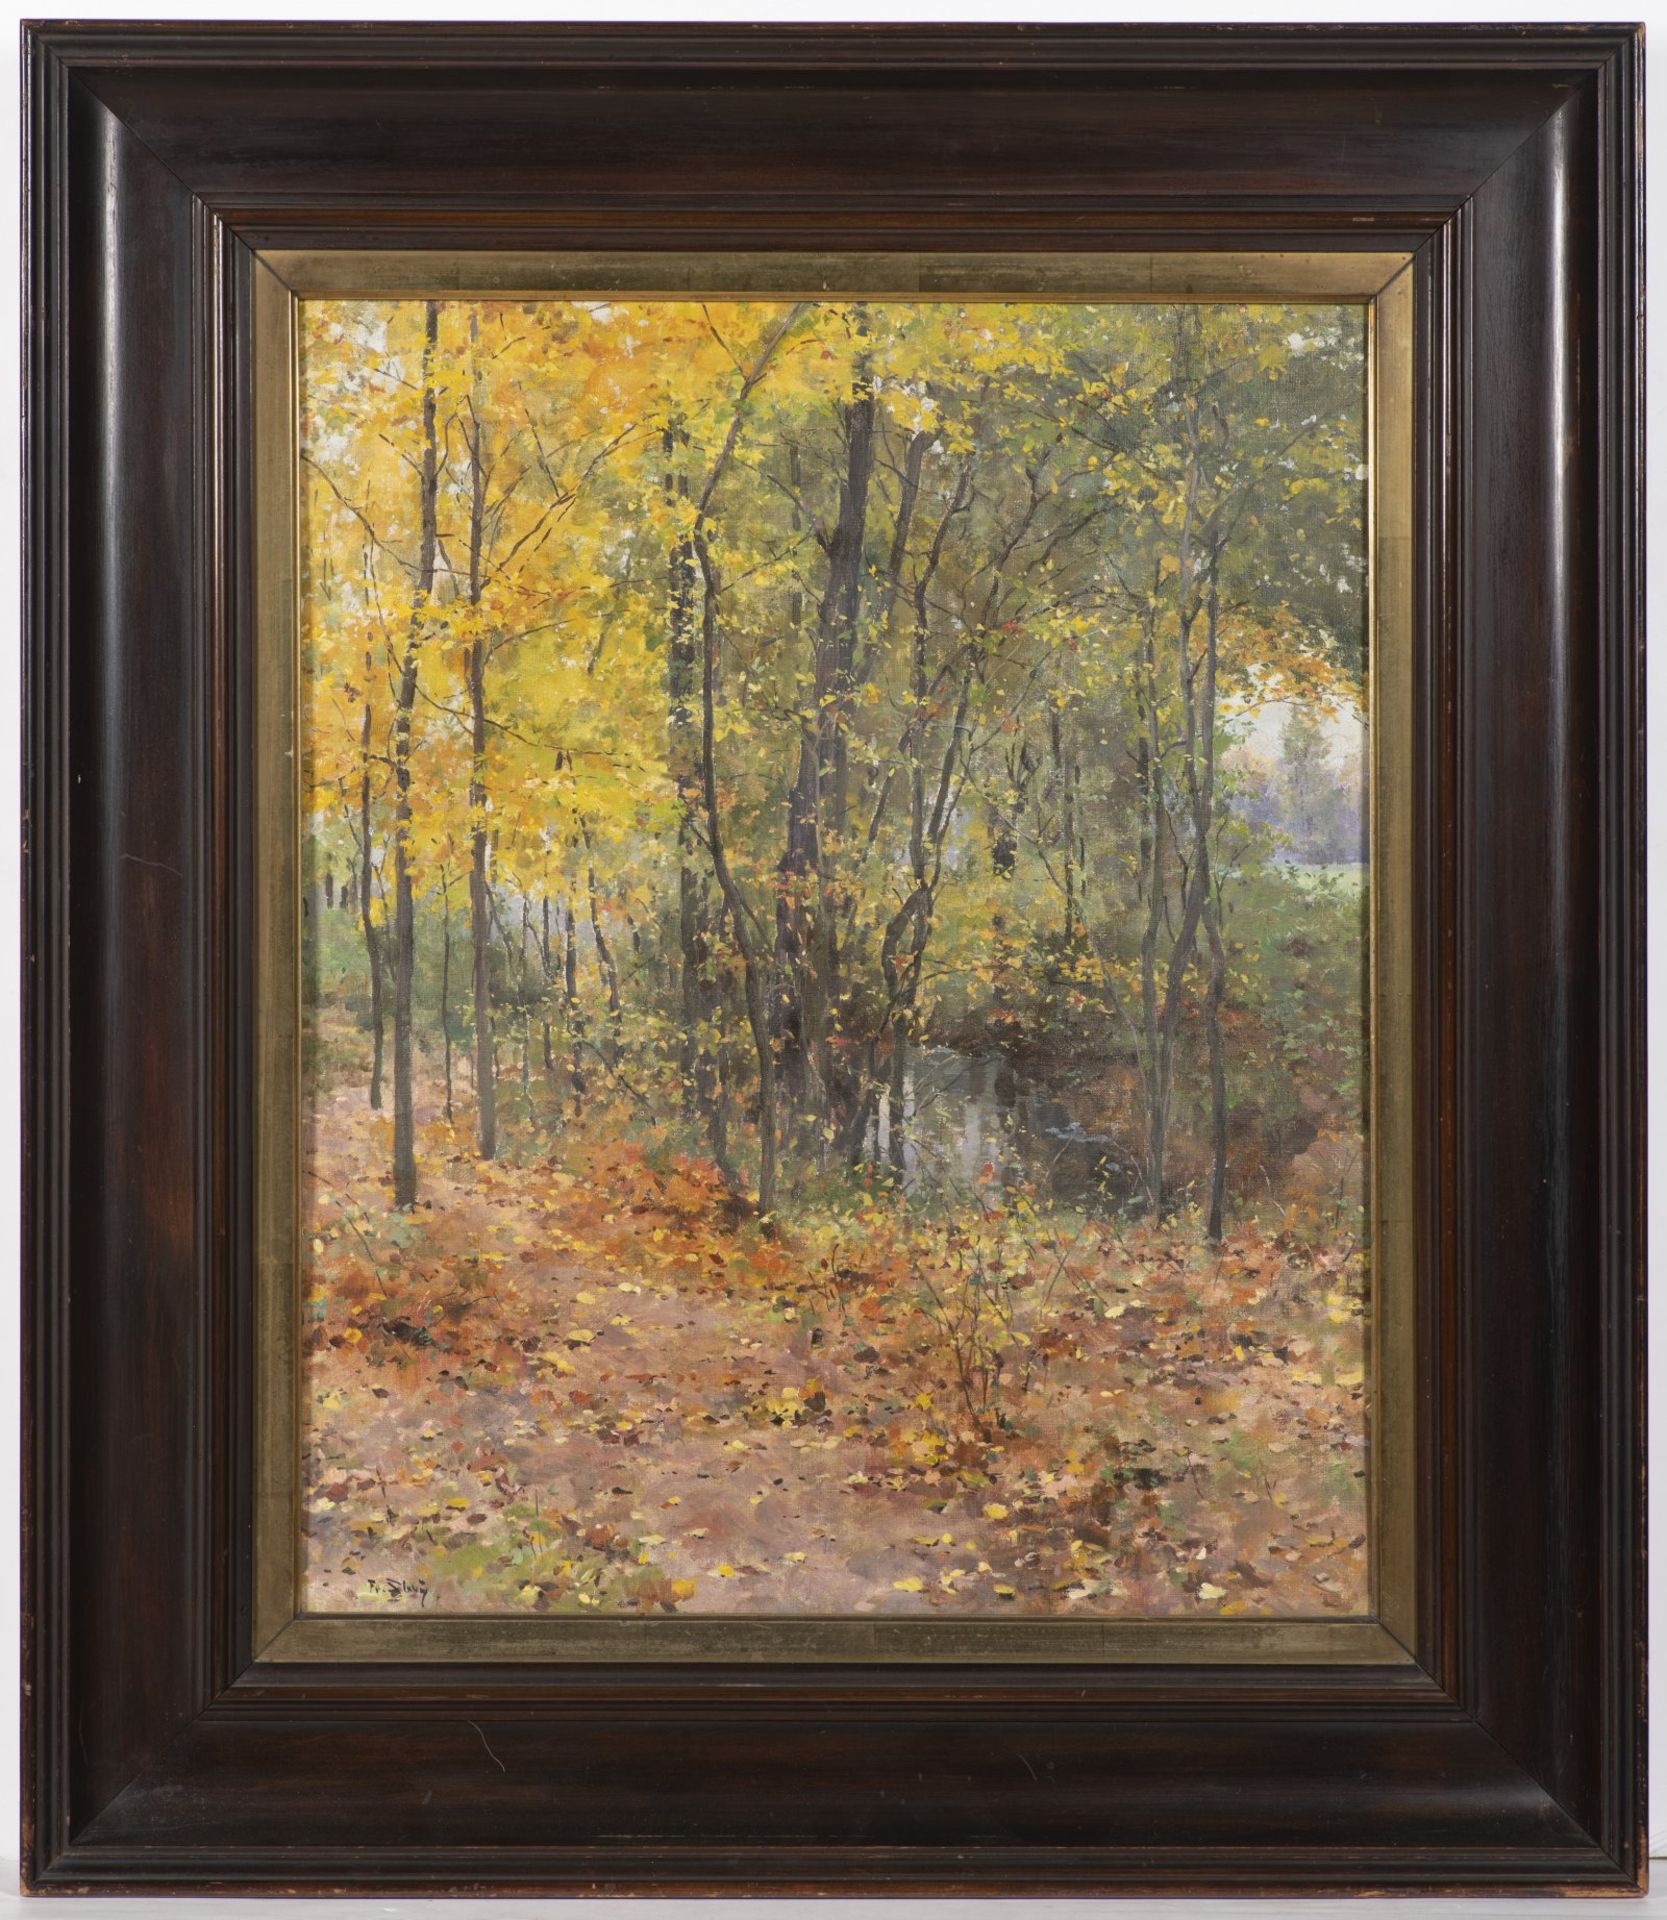 FRANTIŠEK SLABÝ 1863 - 1919: AN AUTUMN ALLEY Ca. 1910 Oil on canvas 55 x 45 cm Signed: Lower left "